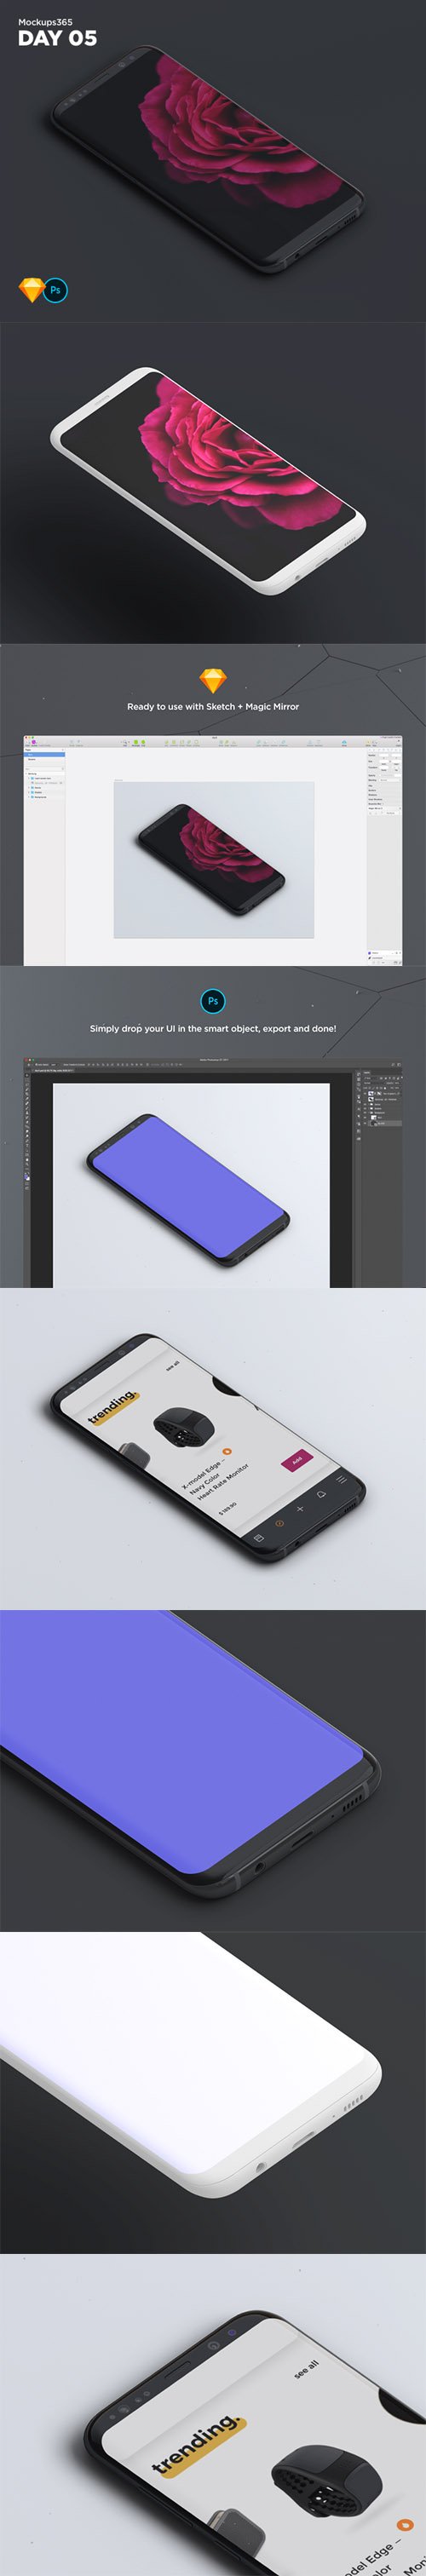 Mockups365: Day 5 - Samsung S8 perspective mockup for Sketch & Photoshop 4K